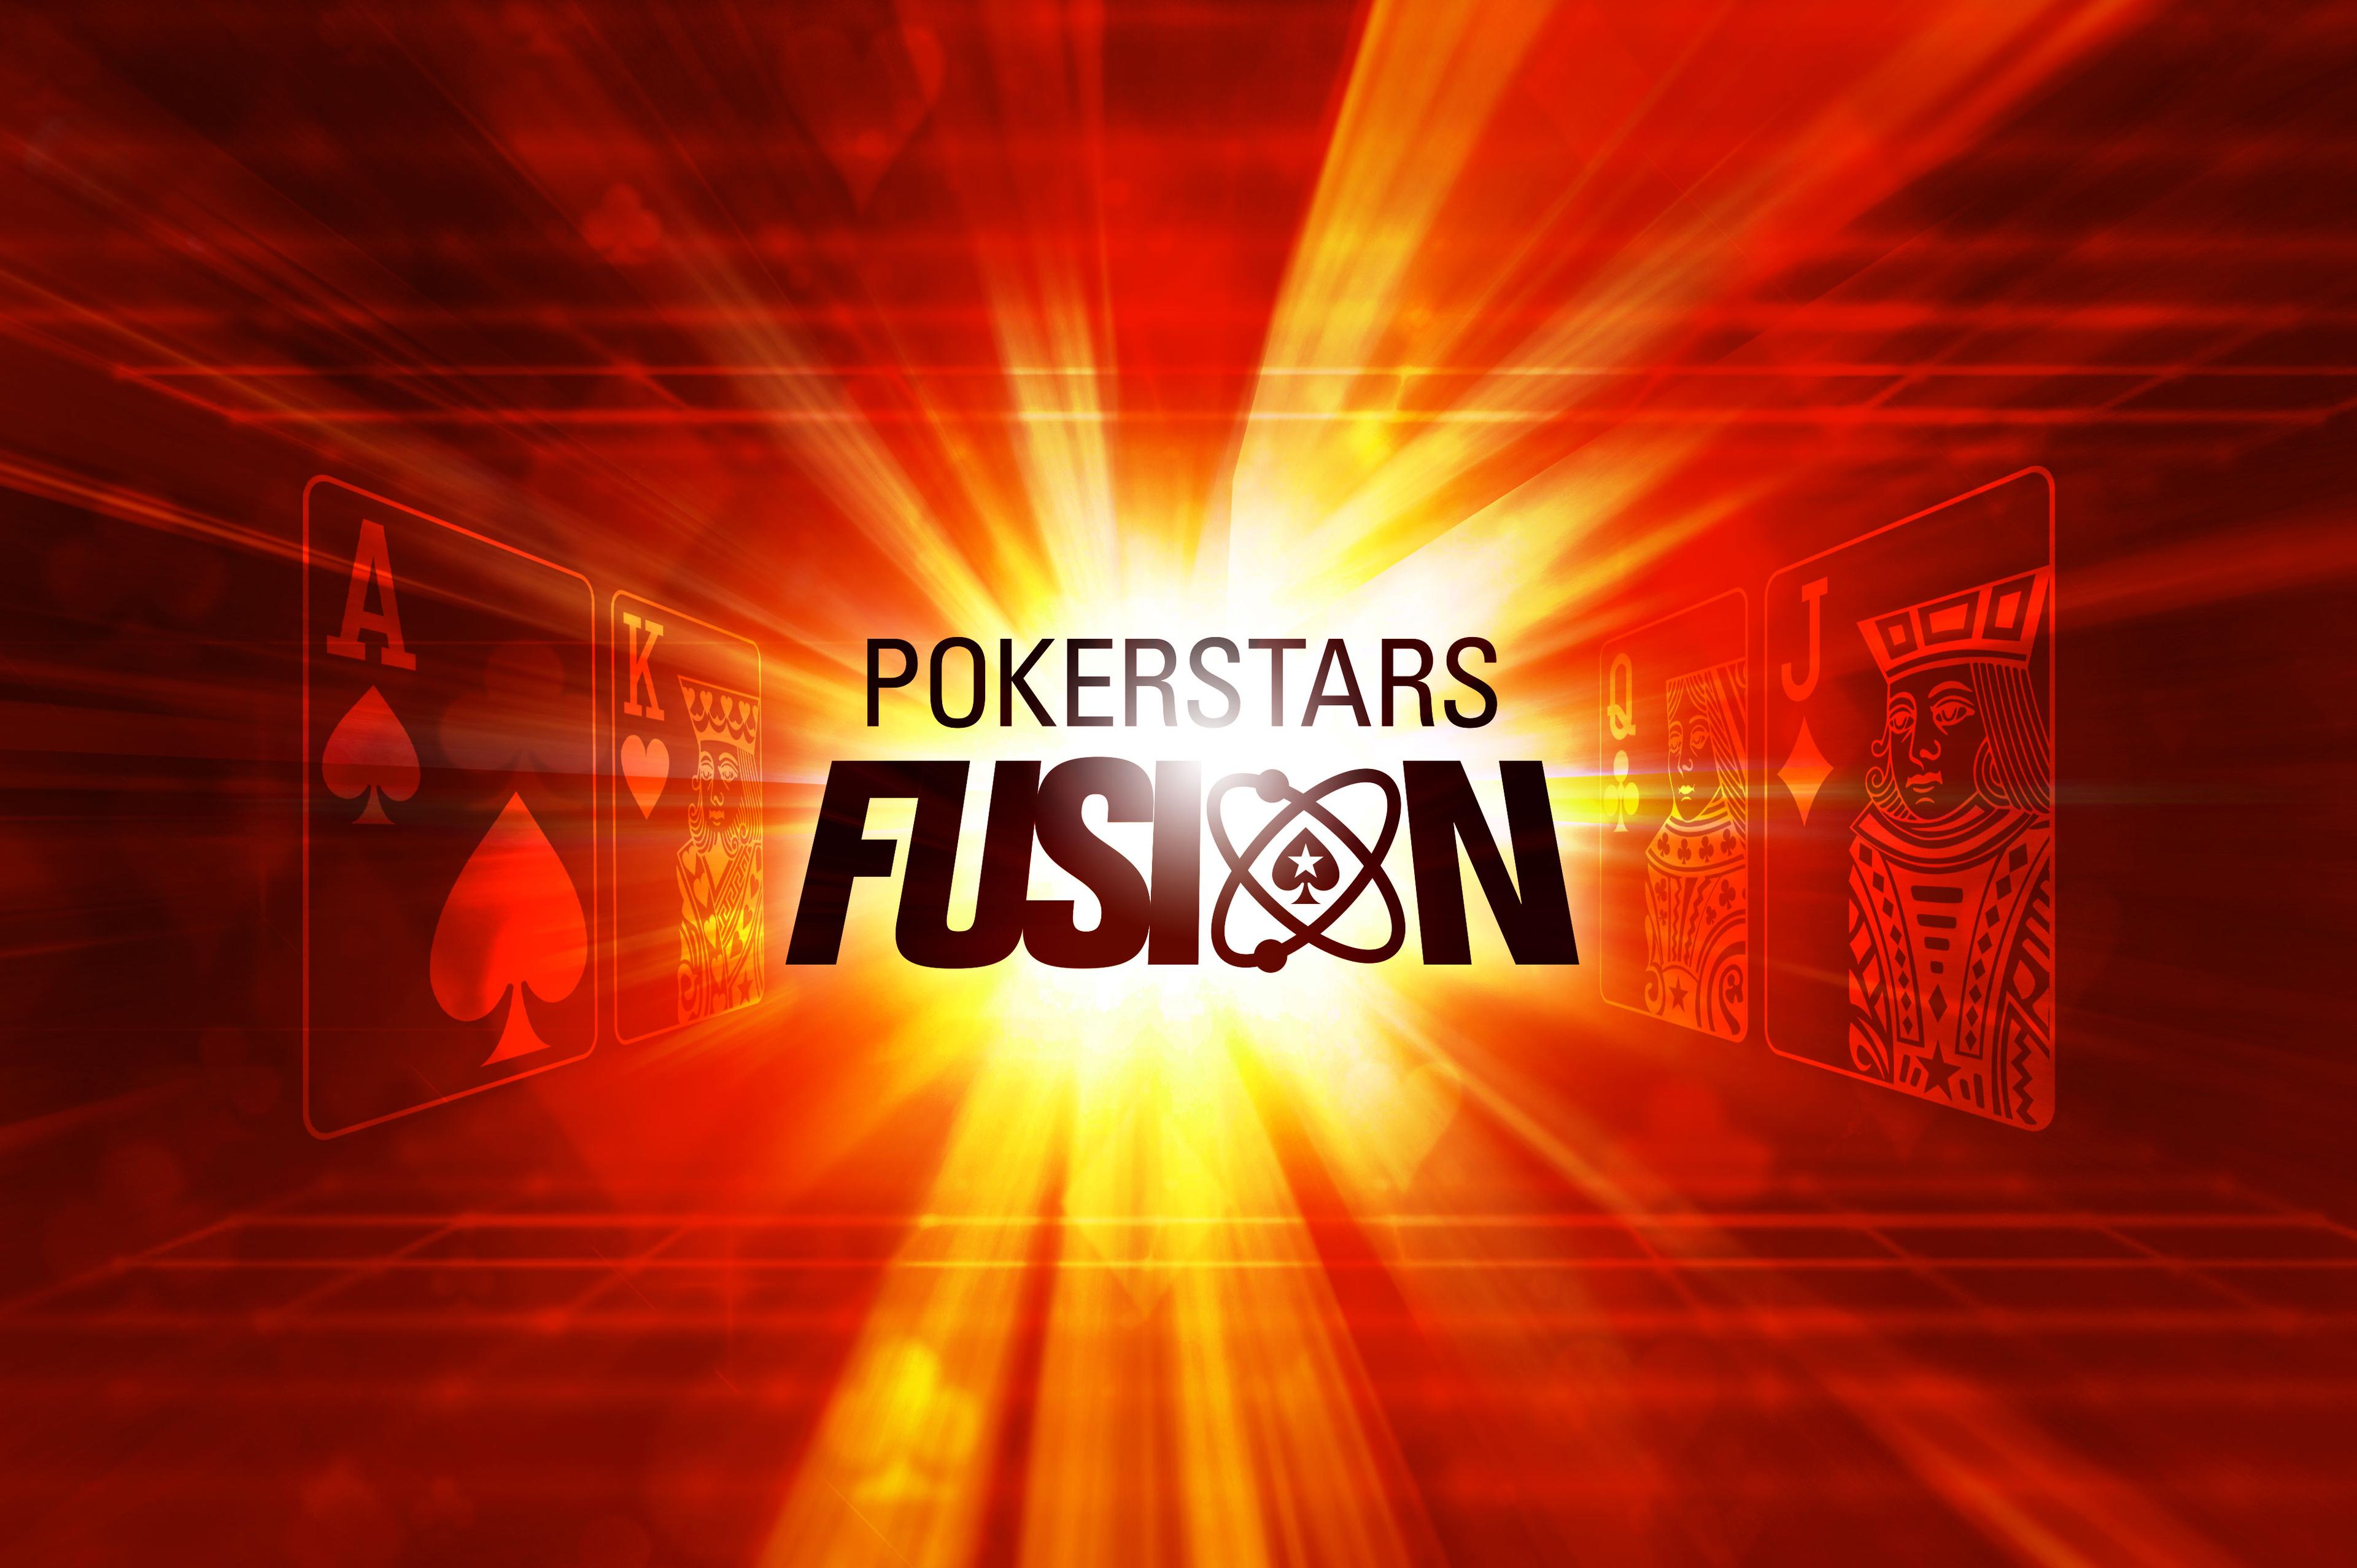 Pokerstars Fusion